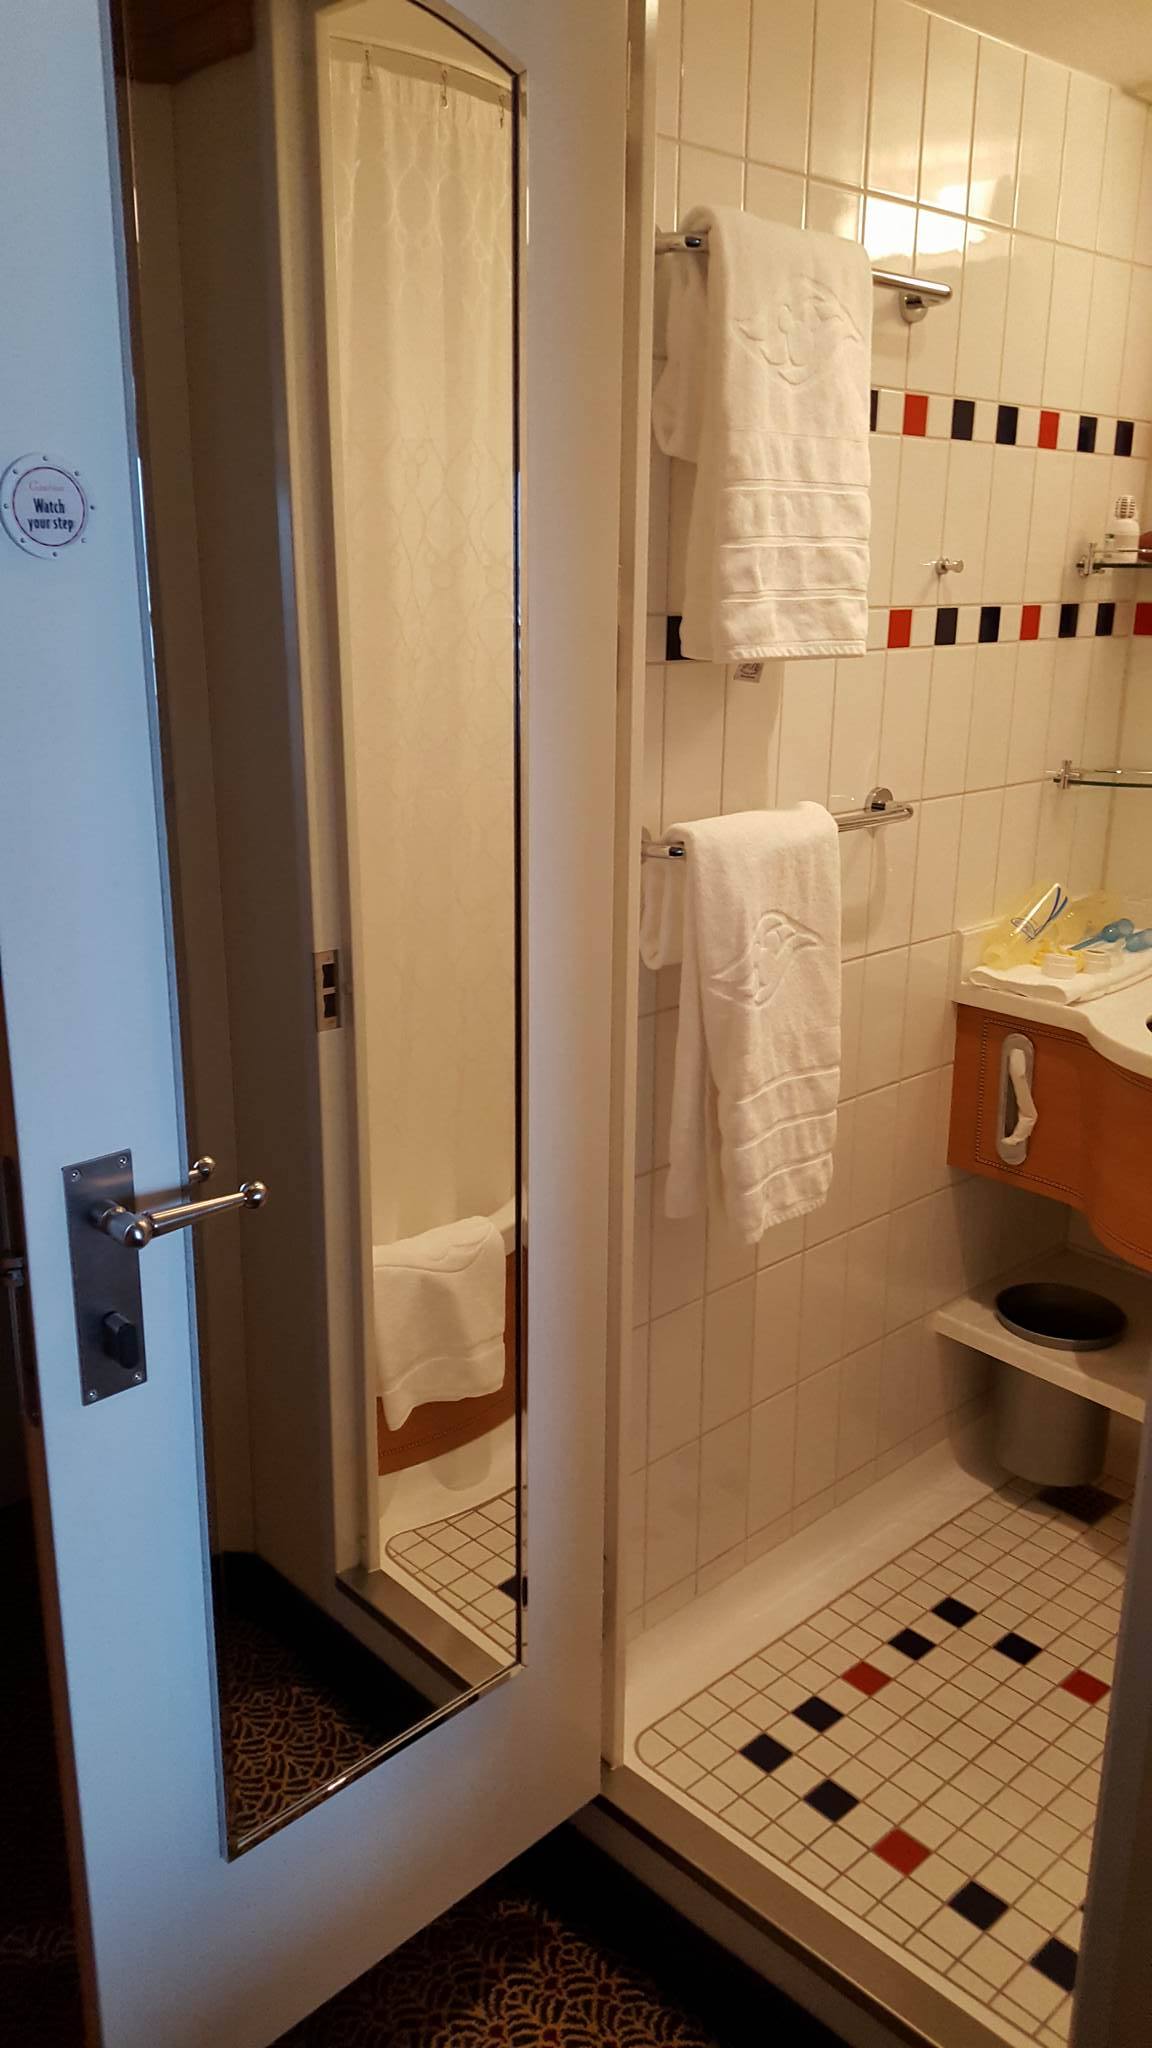 Disney cruise split bathroom